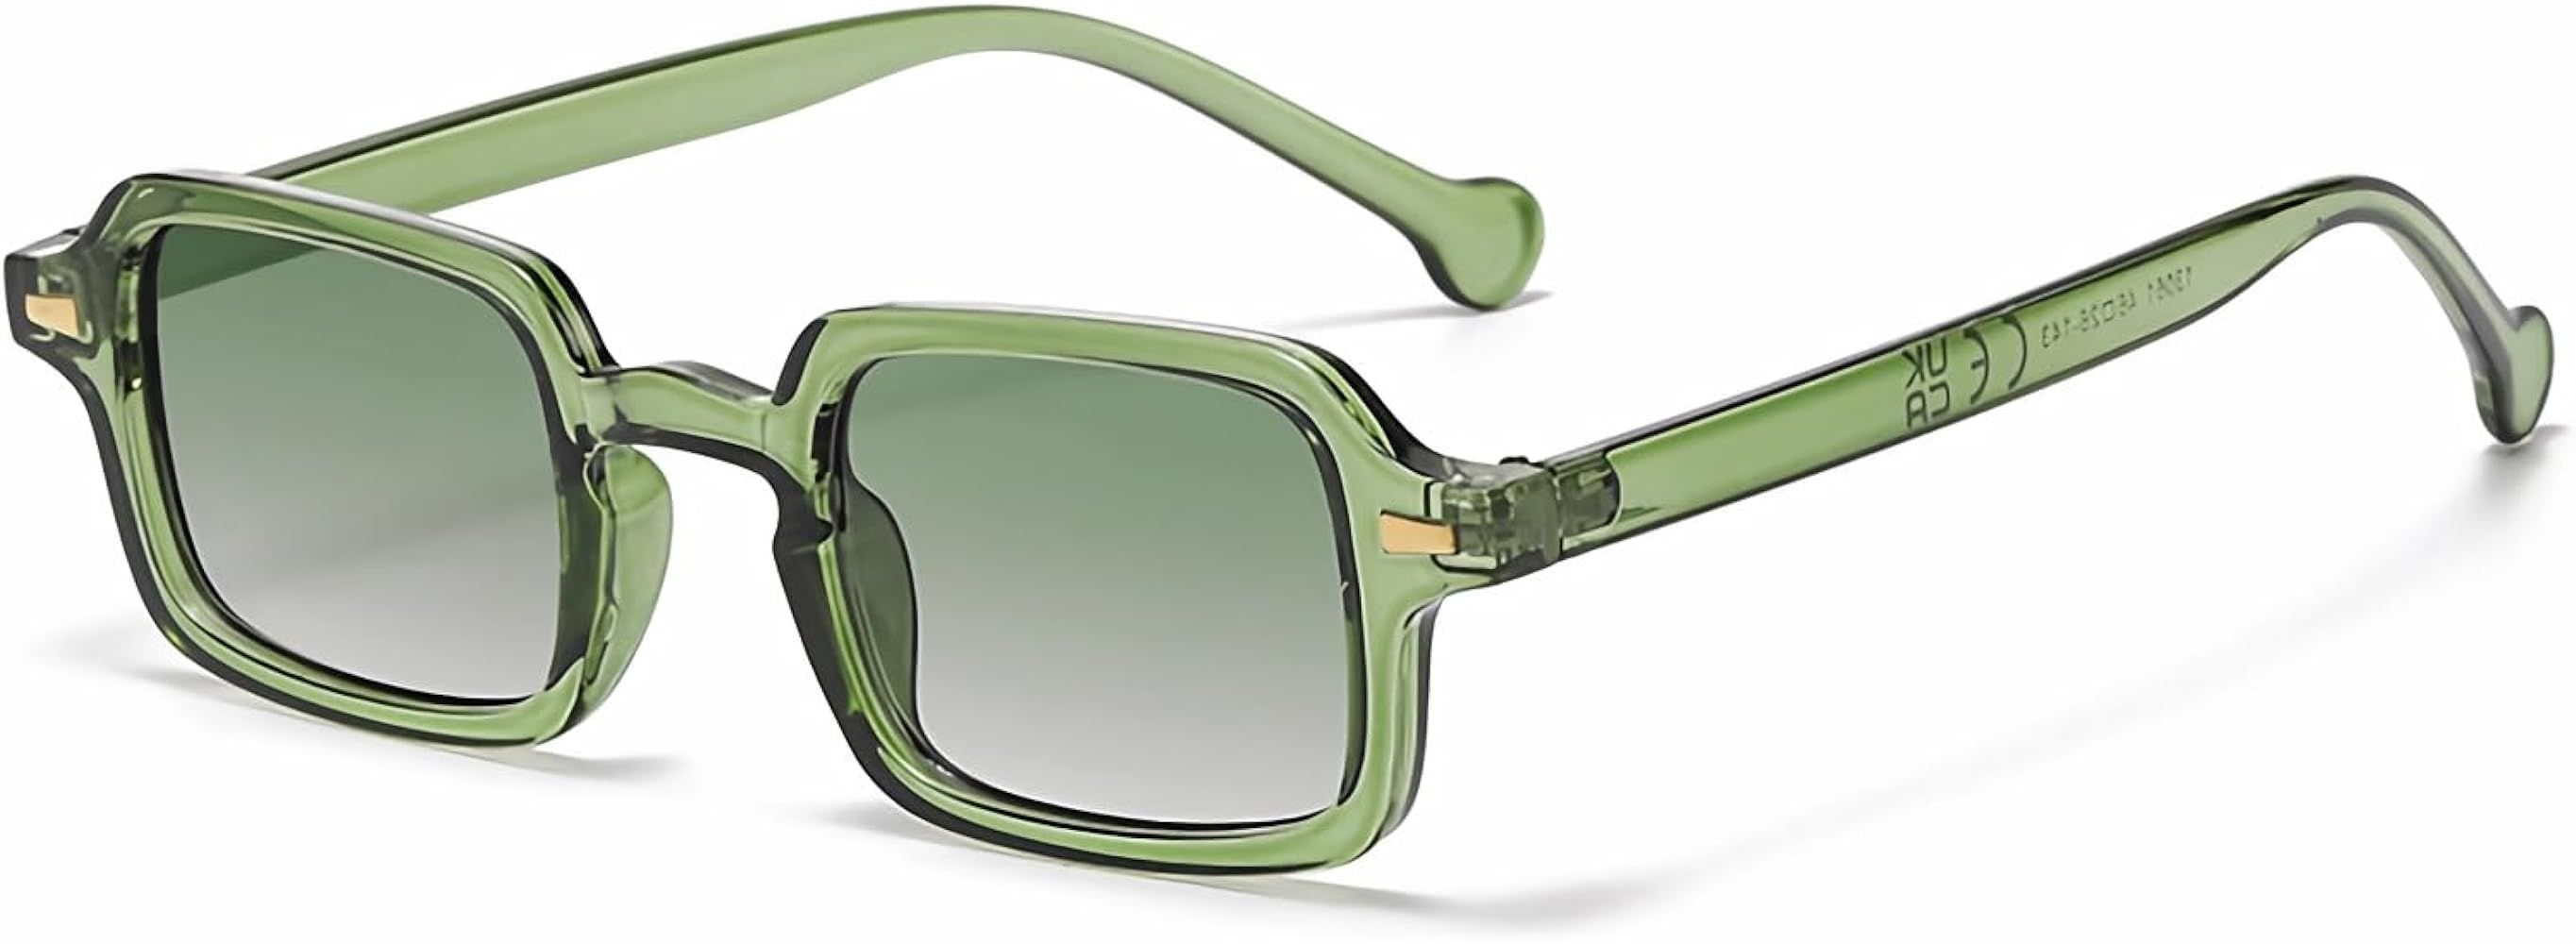 Retro Square Sunglasses for Women Men Small Shades Trendy Rectangle Sunglasses | Amazon (US)